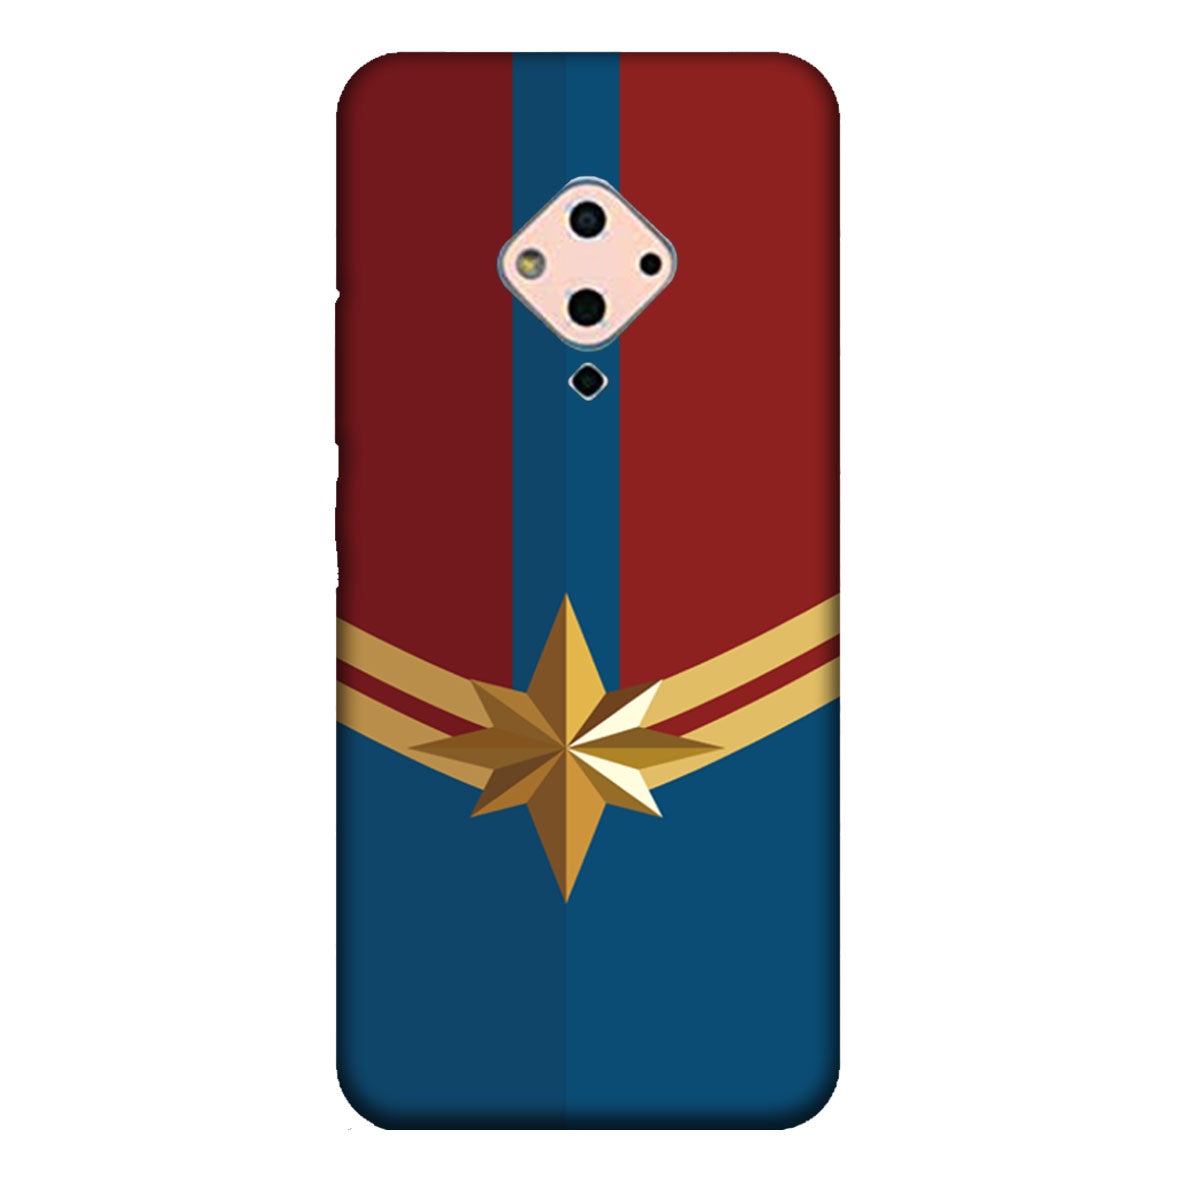 Captain Marvel - Avengers - Mobile Phone Cover - Hard Case - Vivo